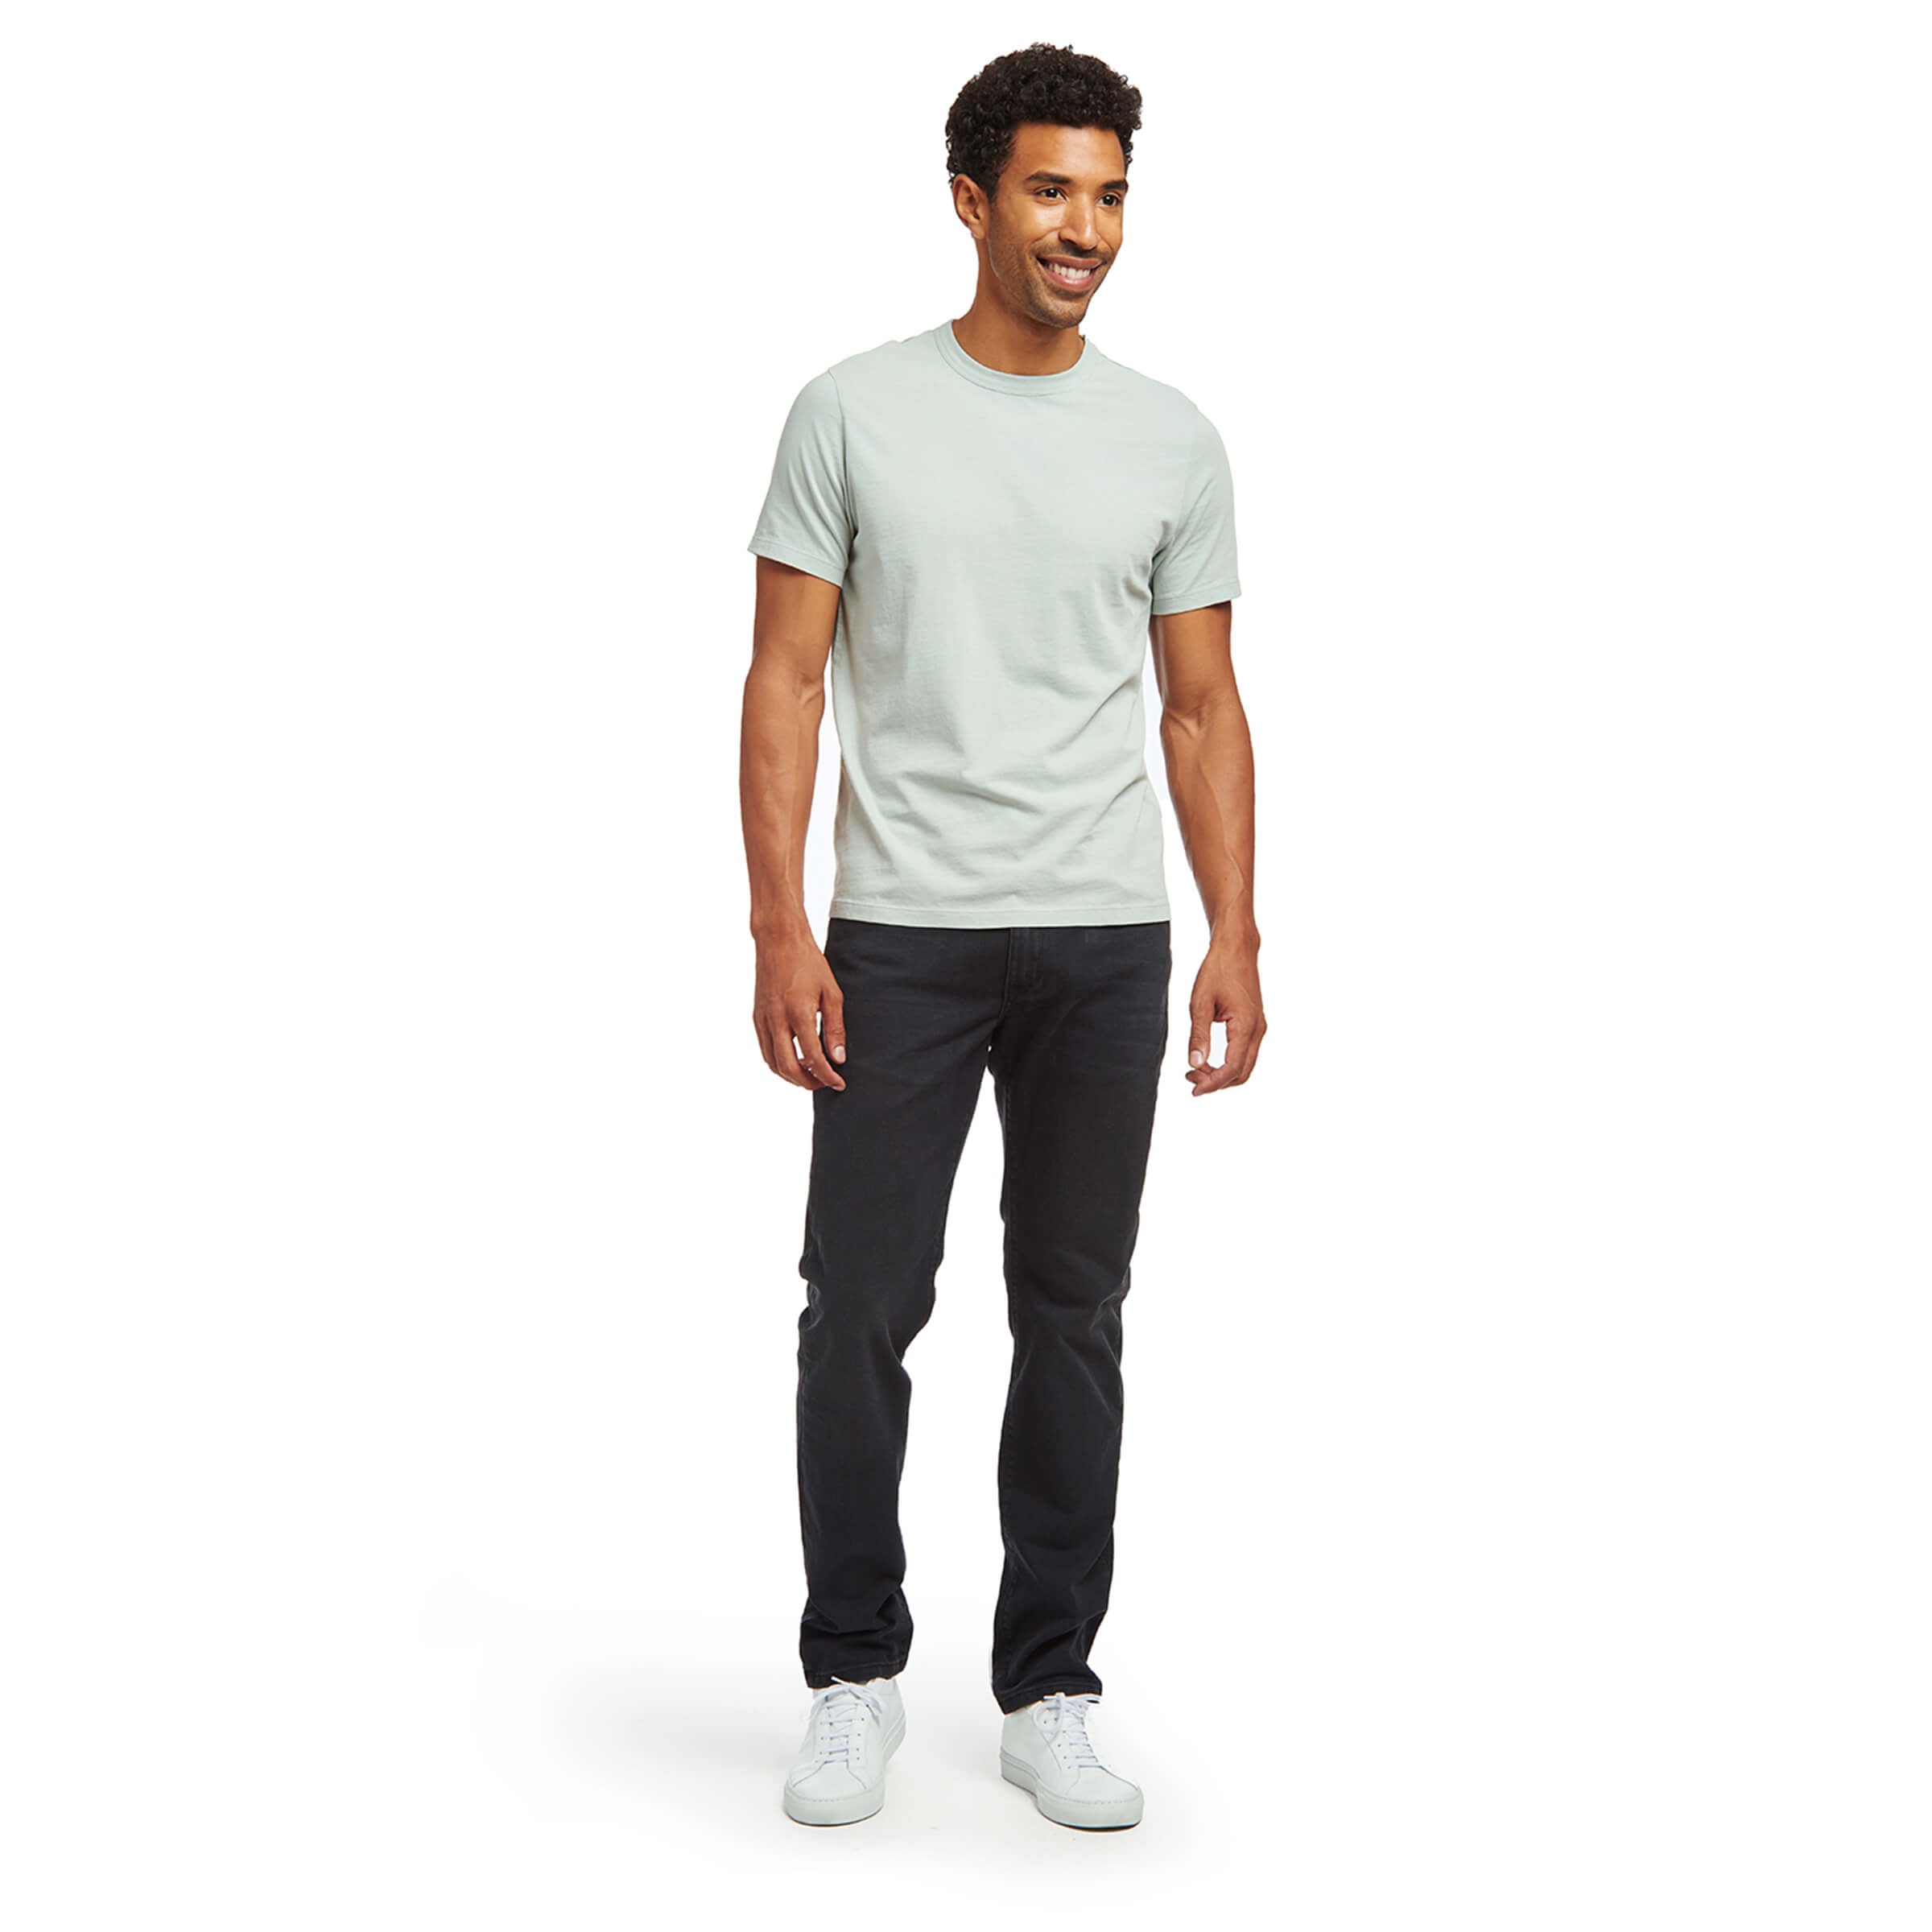 Men wearing Gris Médium/Foncé Slim Stone Jeans